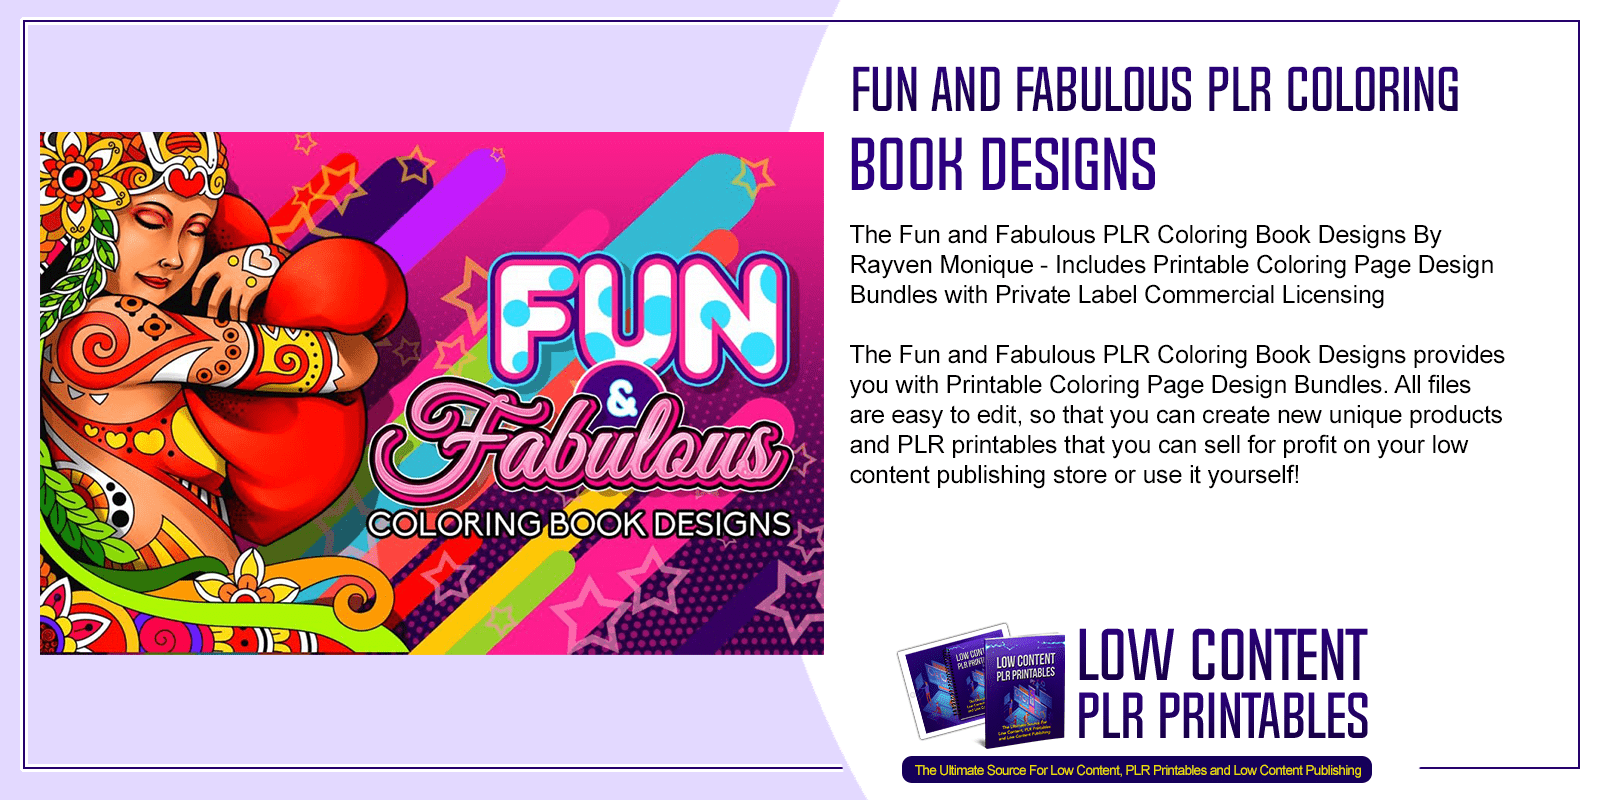 Fun and Fabulous PLR Coloring Book Designs